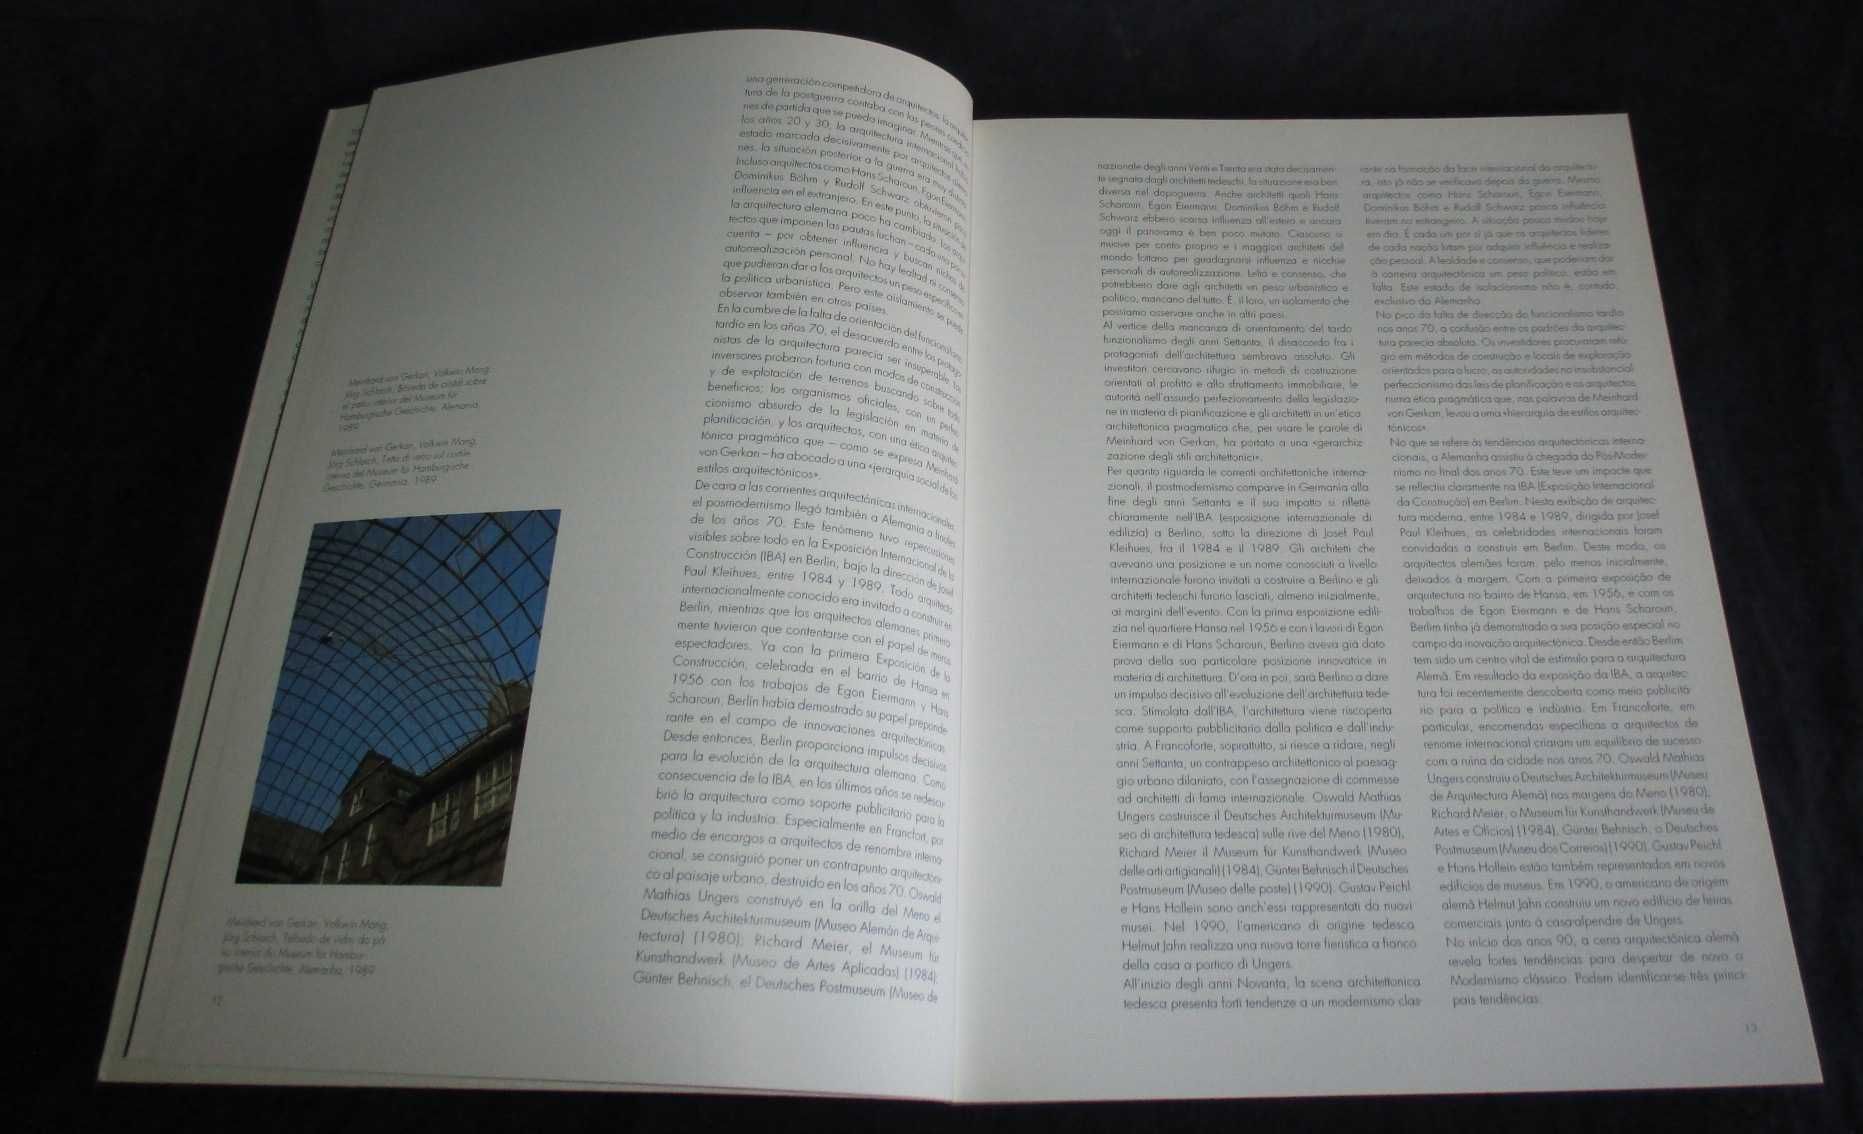 Livros Contemporary European Architects 2 volumes Taschen